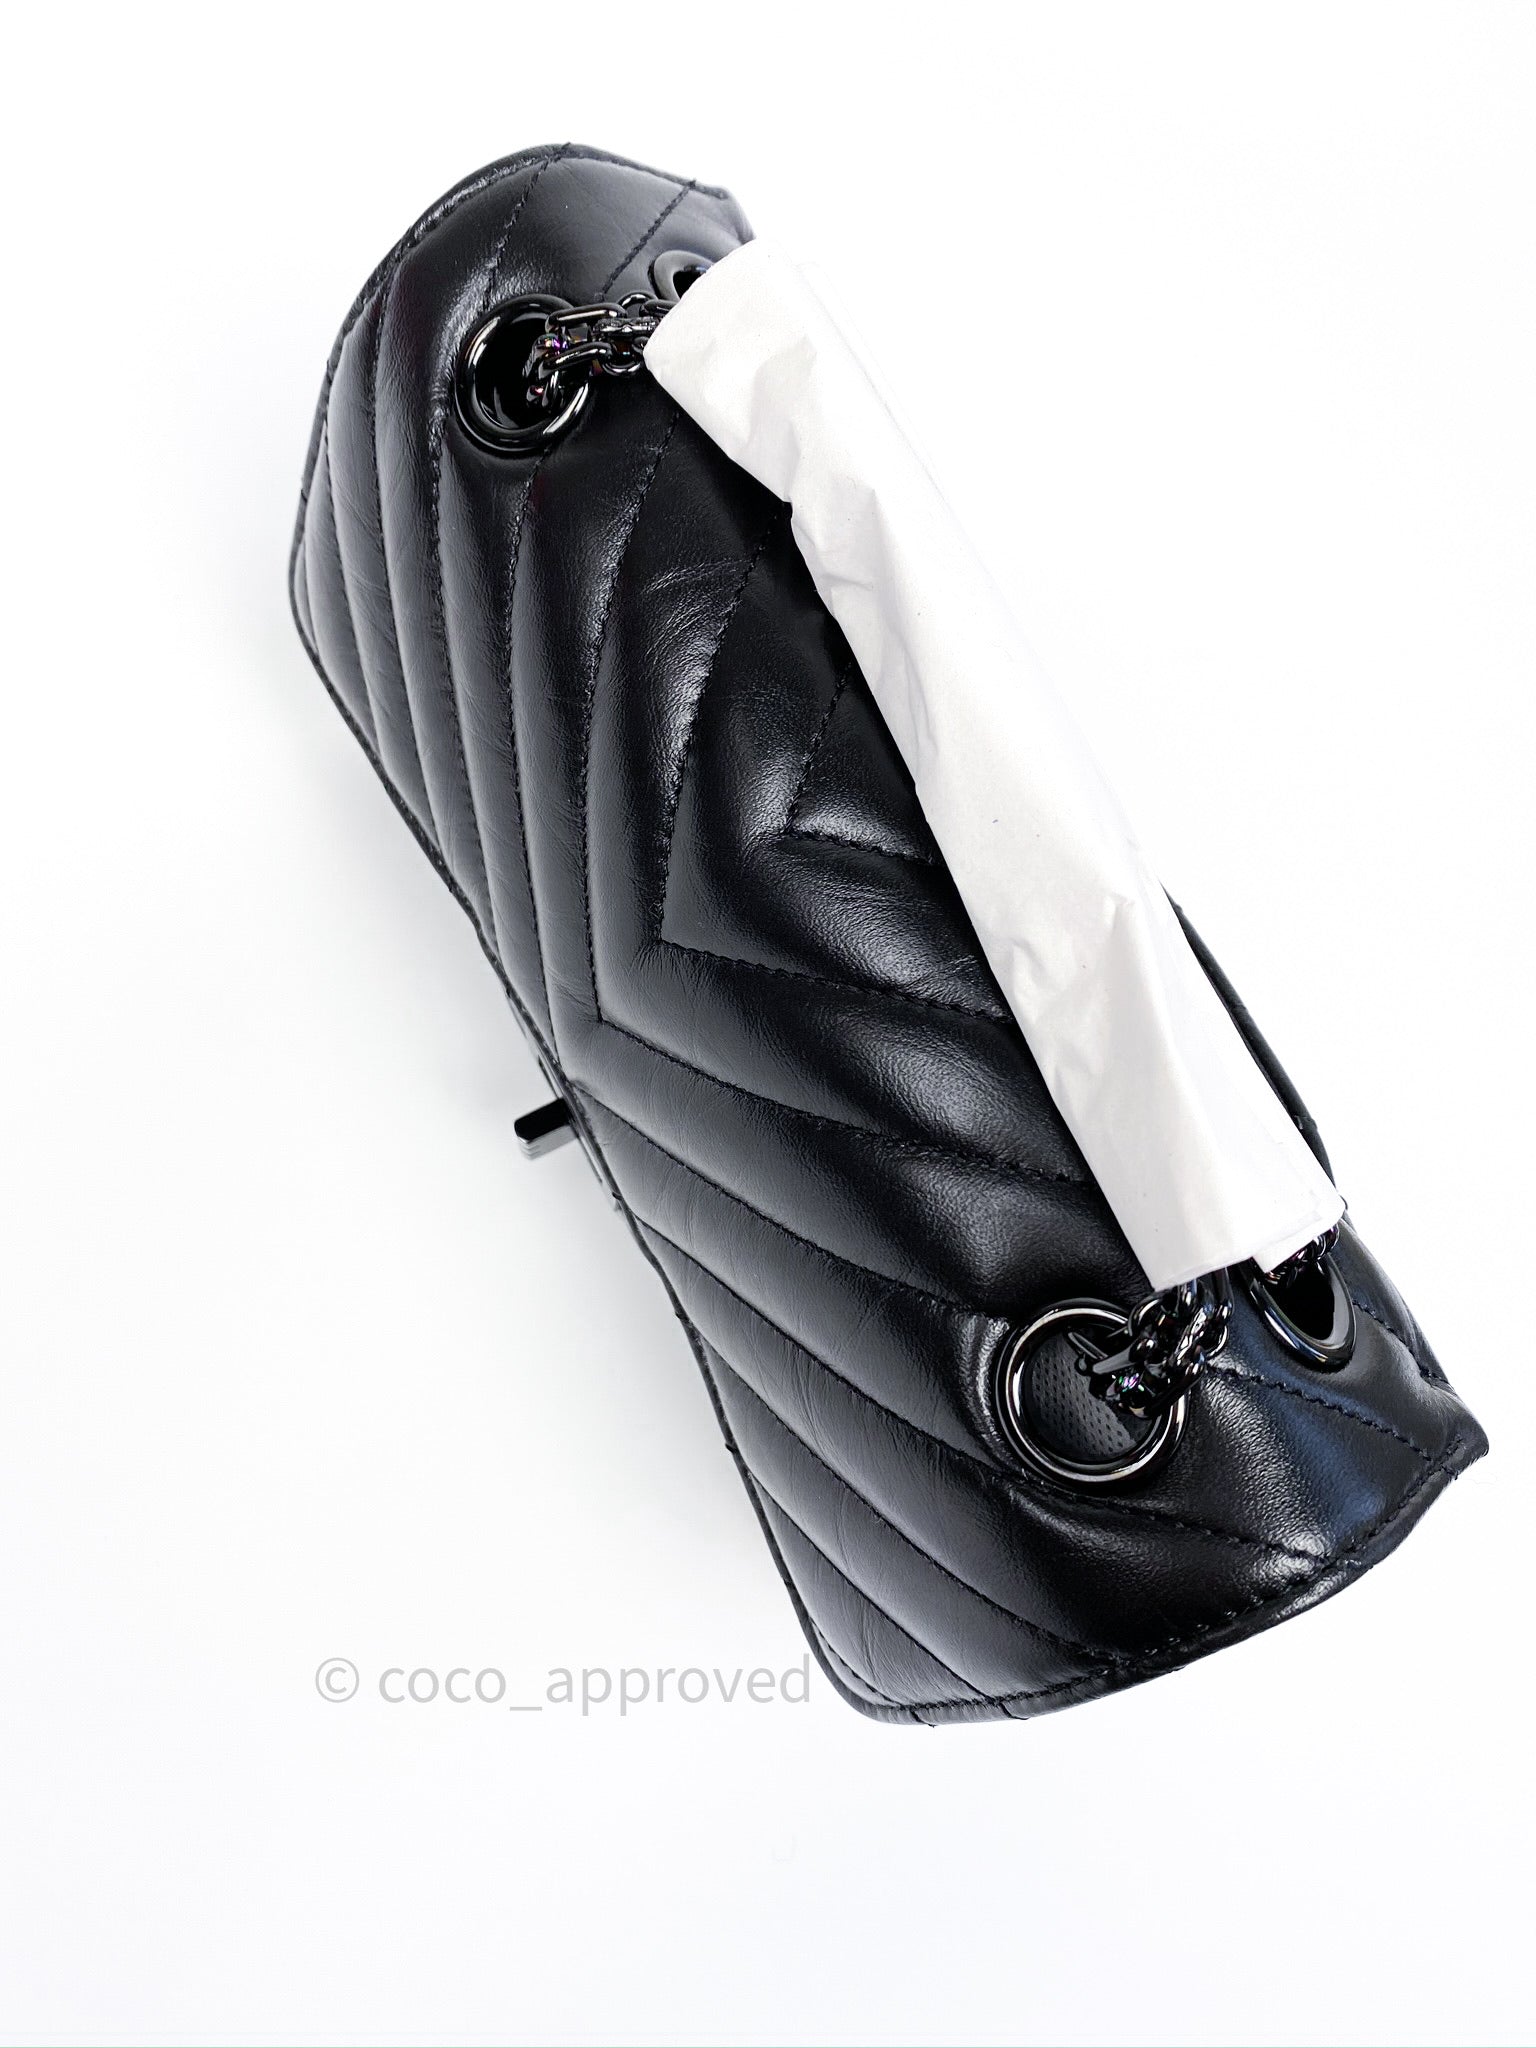 Chanel Mini Reissue 224 So Black Chevron Calfskin Black Hardware – Coco  Approved Studio